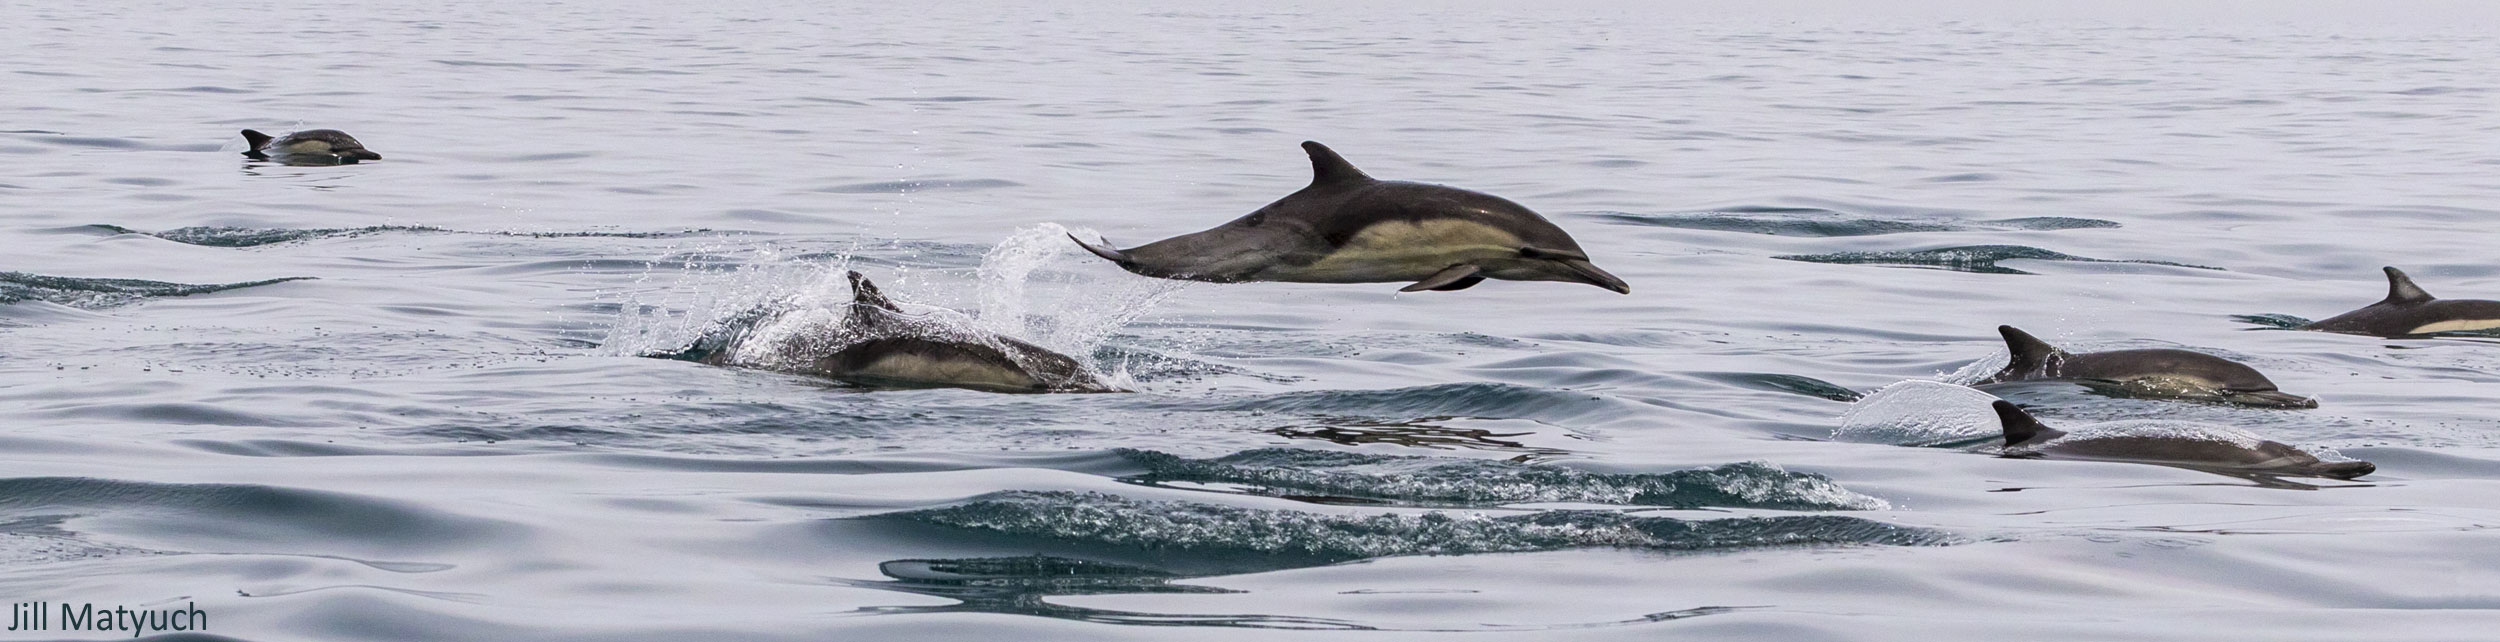 Swimming dolphins off Newport Beach, by Jill Matyuch